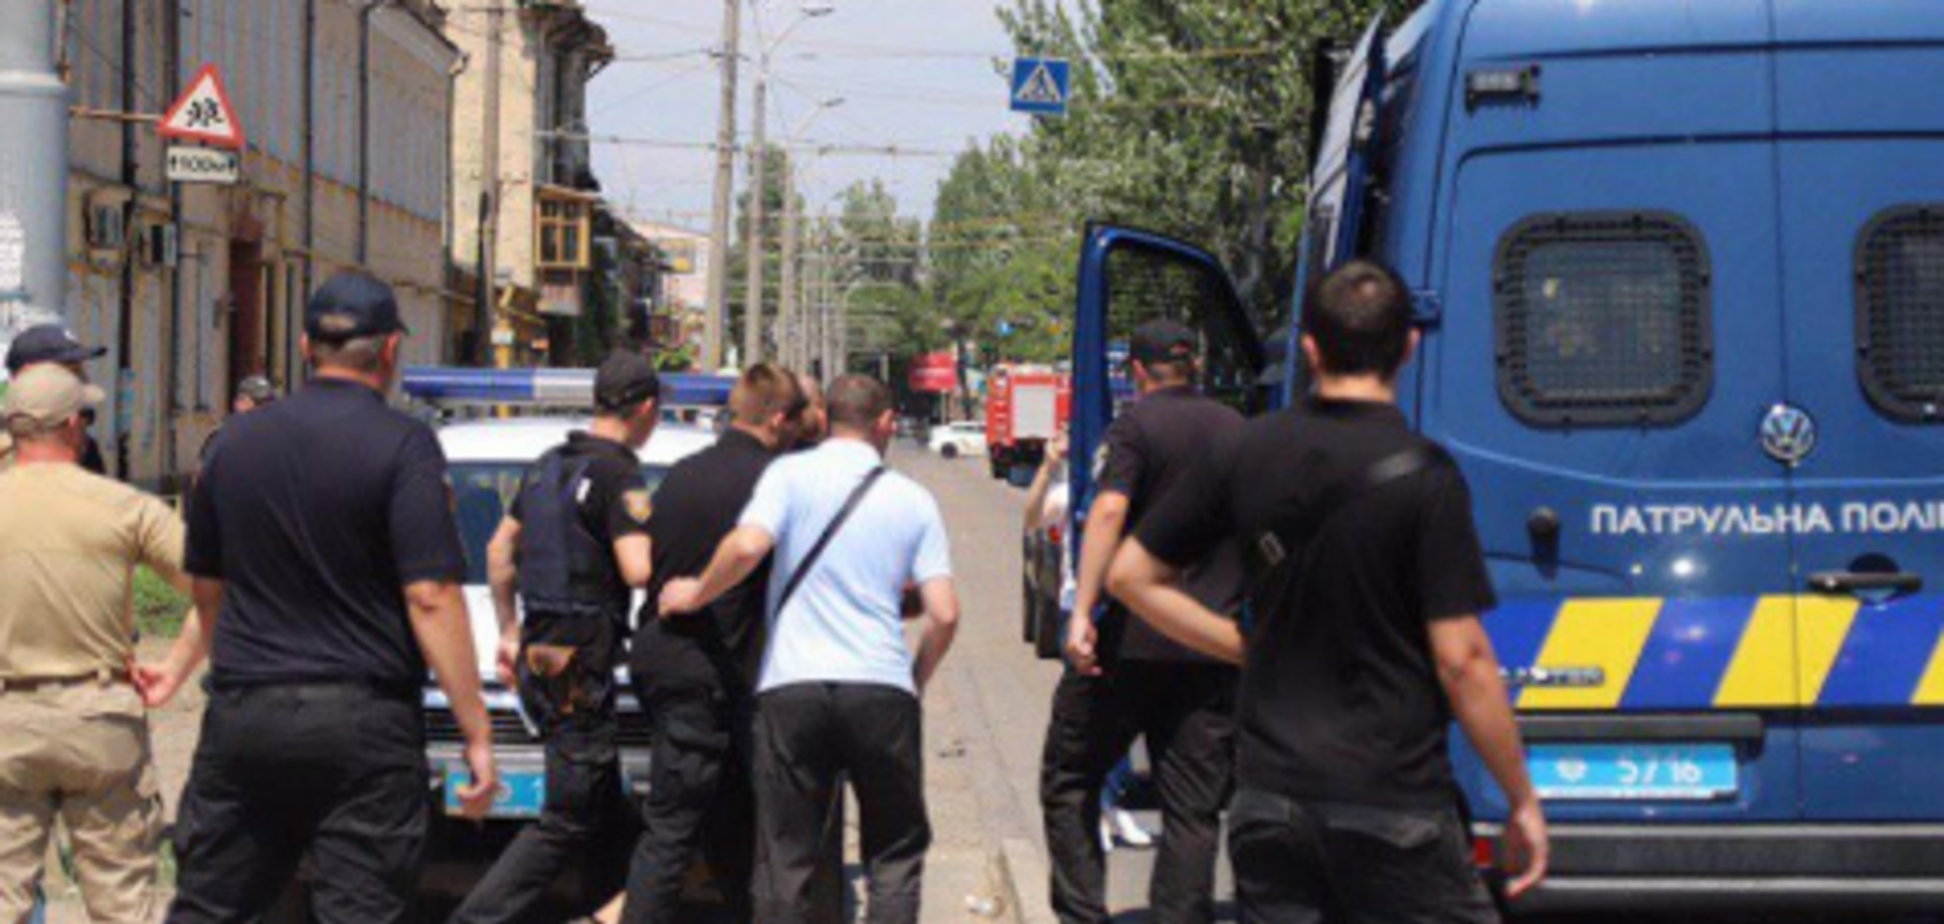 Требовал миллион и вертолет: в Одессе мужчина захватил заложниц. Все подробности